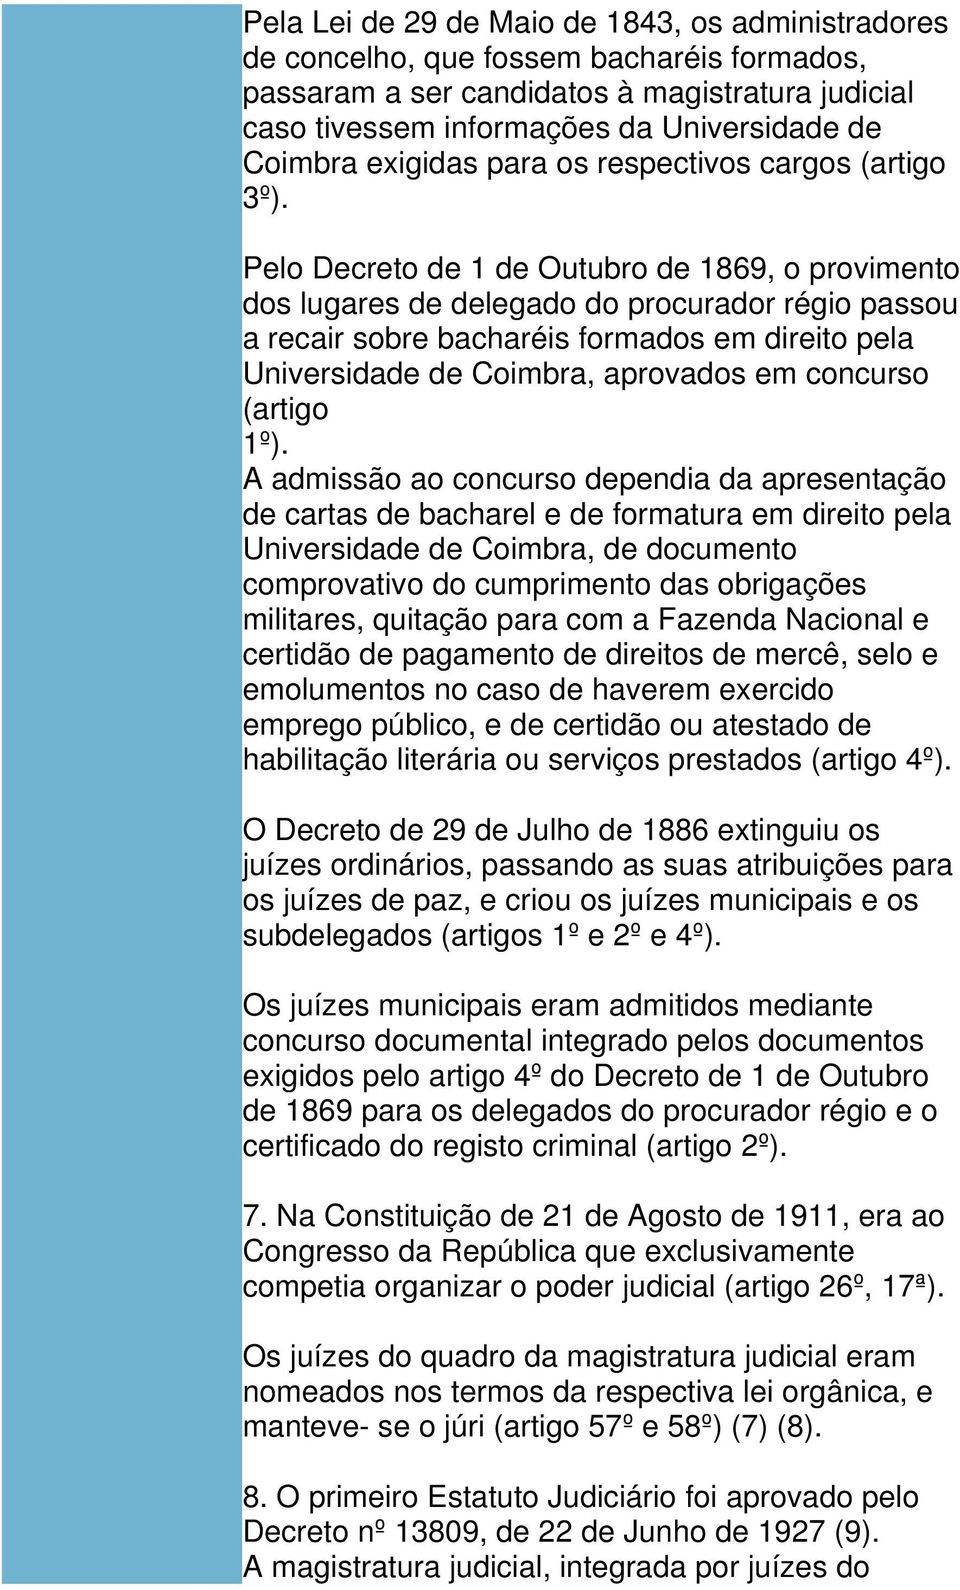 Pelo Decreto de 1 de Outubro de 1869, o provimento dos lugares de delegado do procurador régio passou a recair sobre bacharéis formados em direito pela Universidade de Coimbra, aprovados em concurso